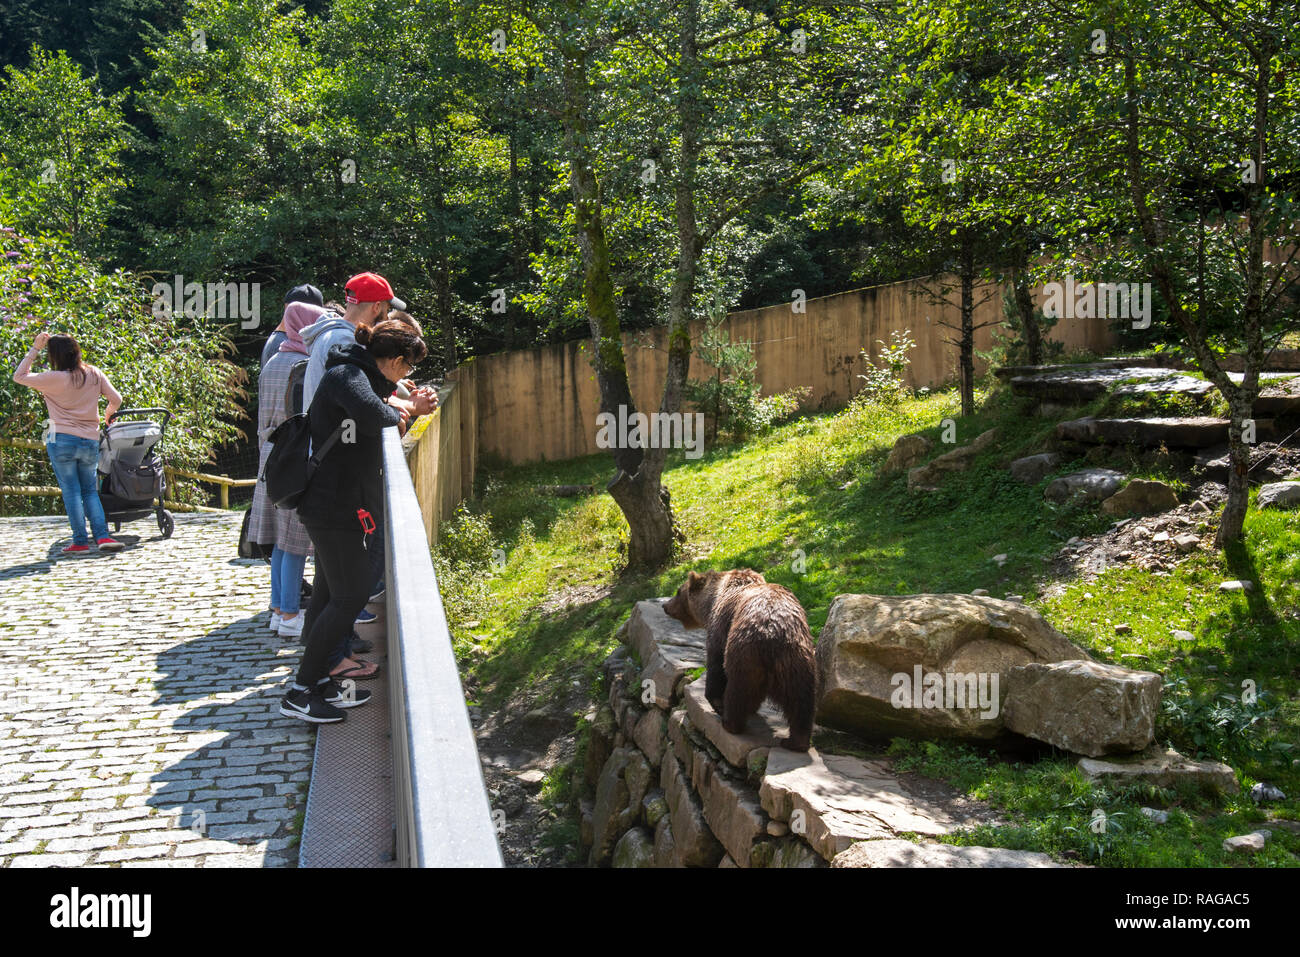 Ai visitatori la visione di captive orso bruno in involucro allo zoo Aran Park, parco animale / giardino zoologico a Bossost, Lleida, Pirenei, Catalogna, Spagna Foto Stock